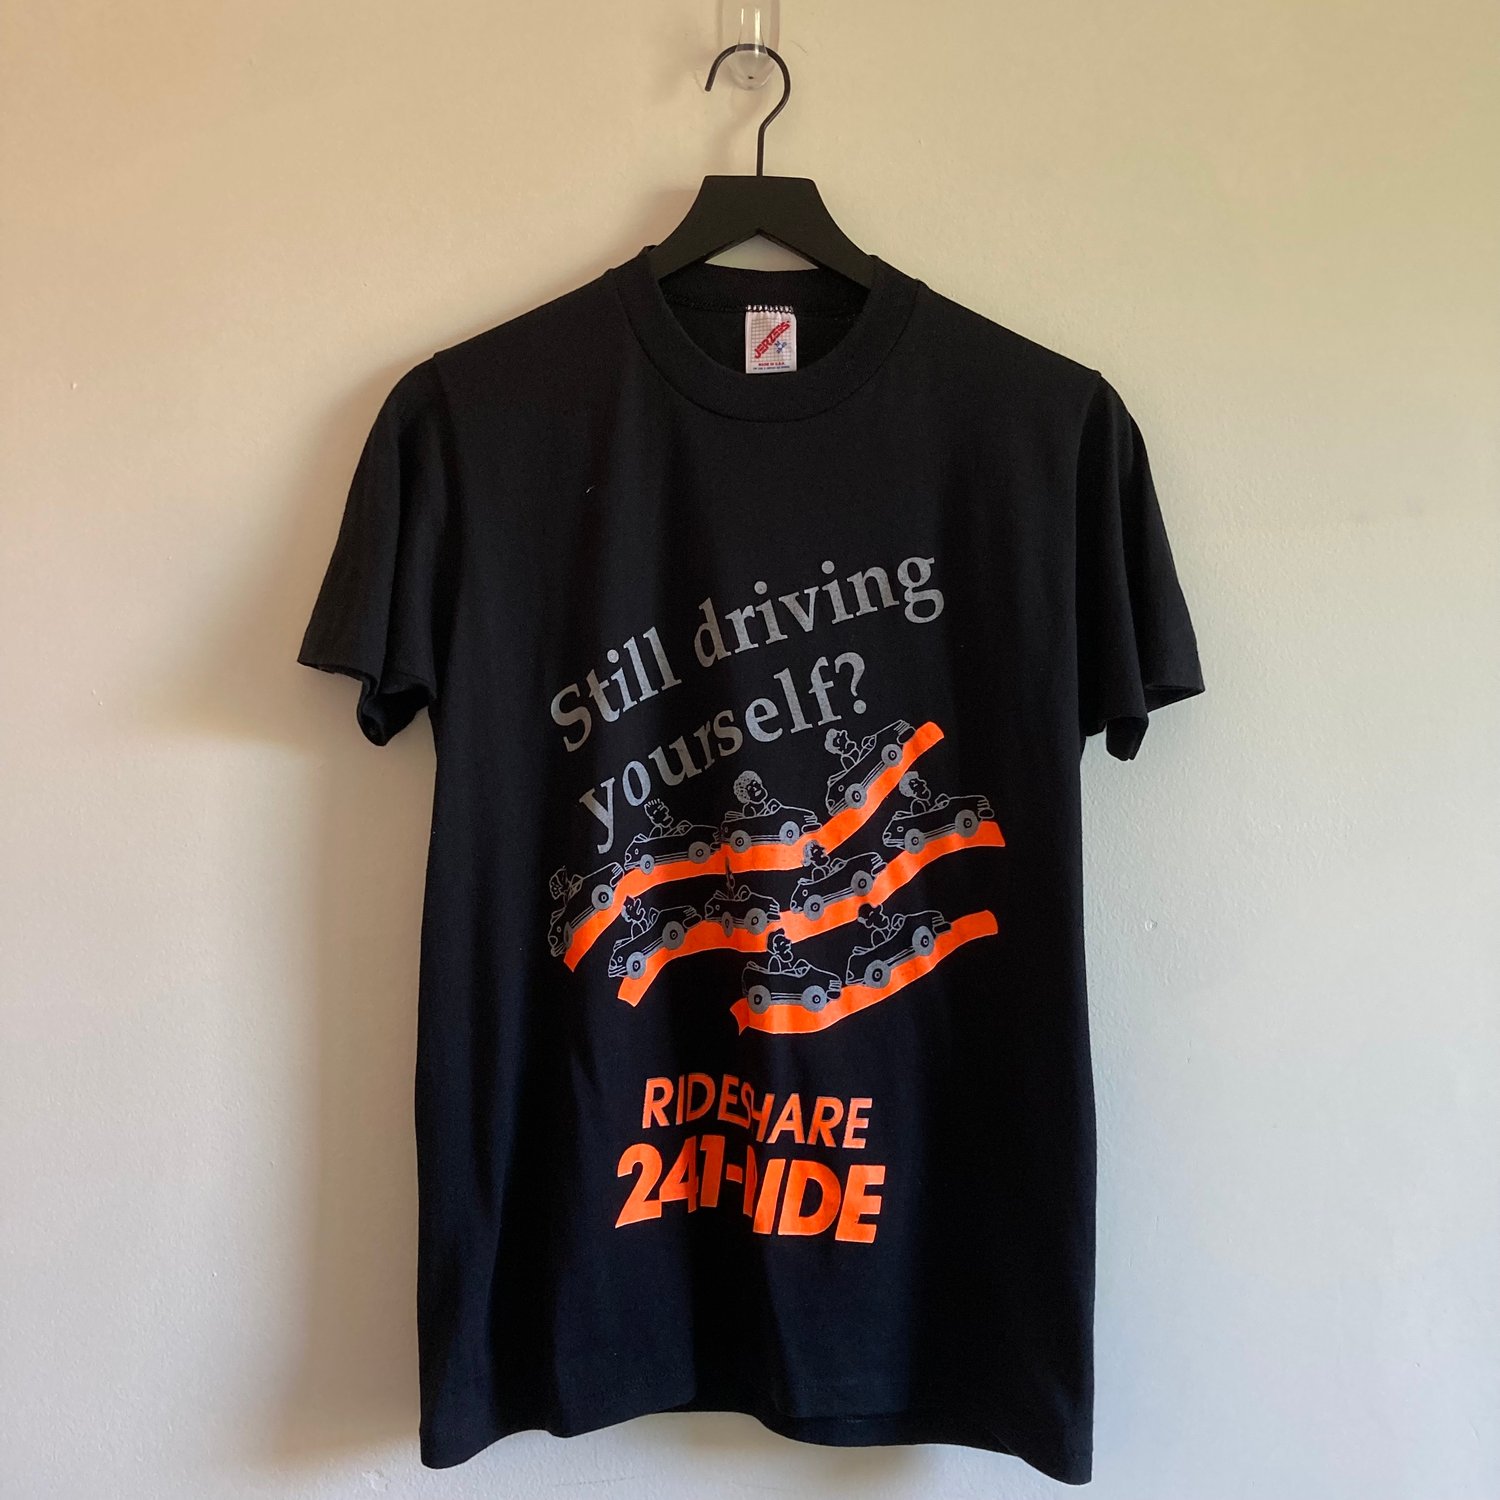 Image of Rideshare T-Shirt